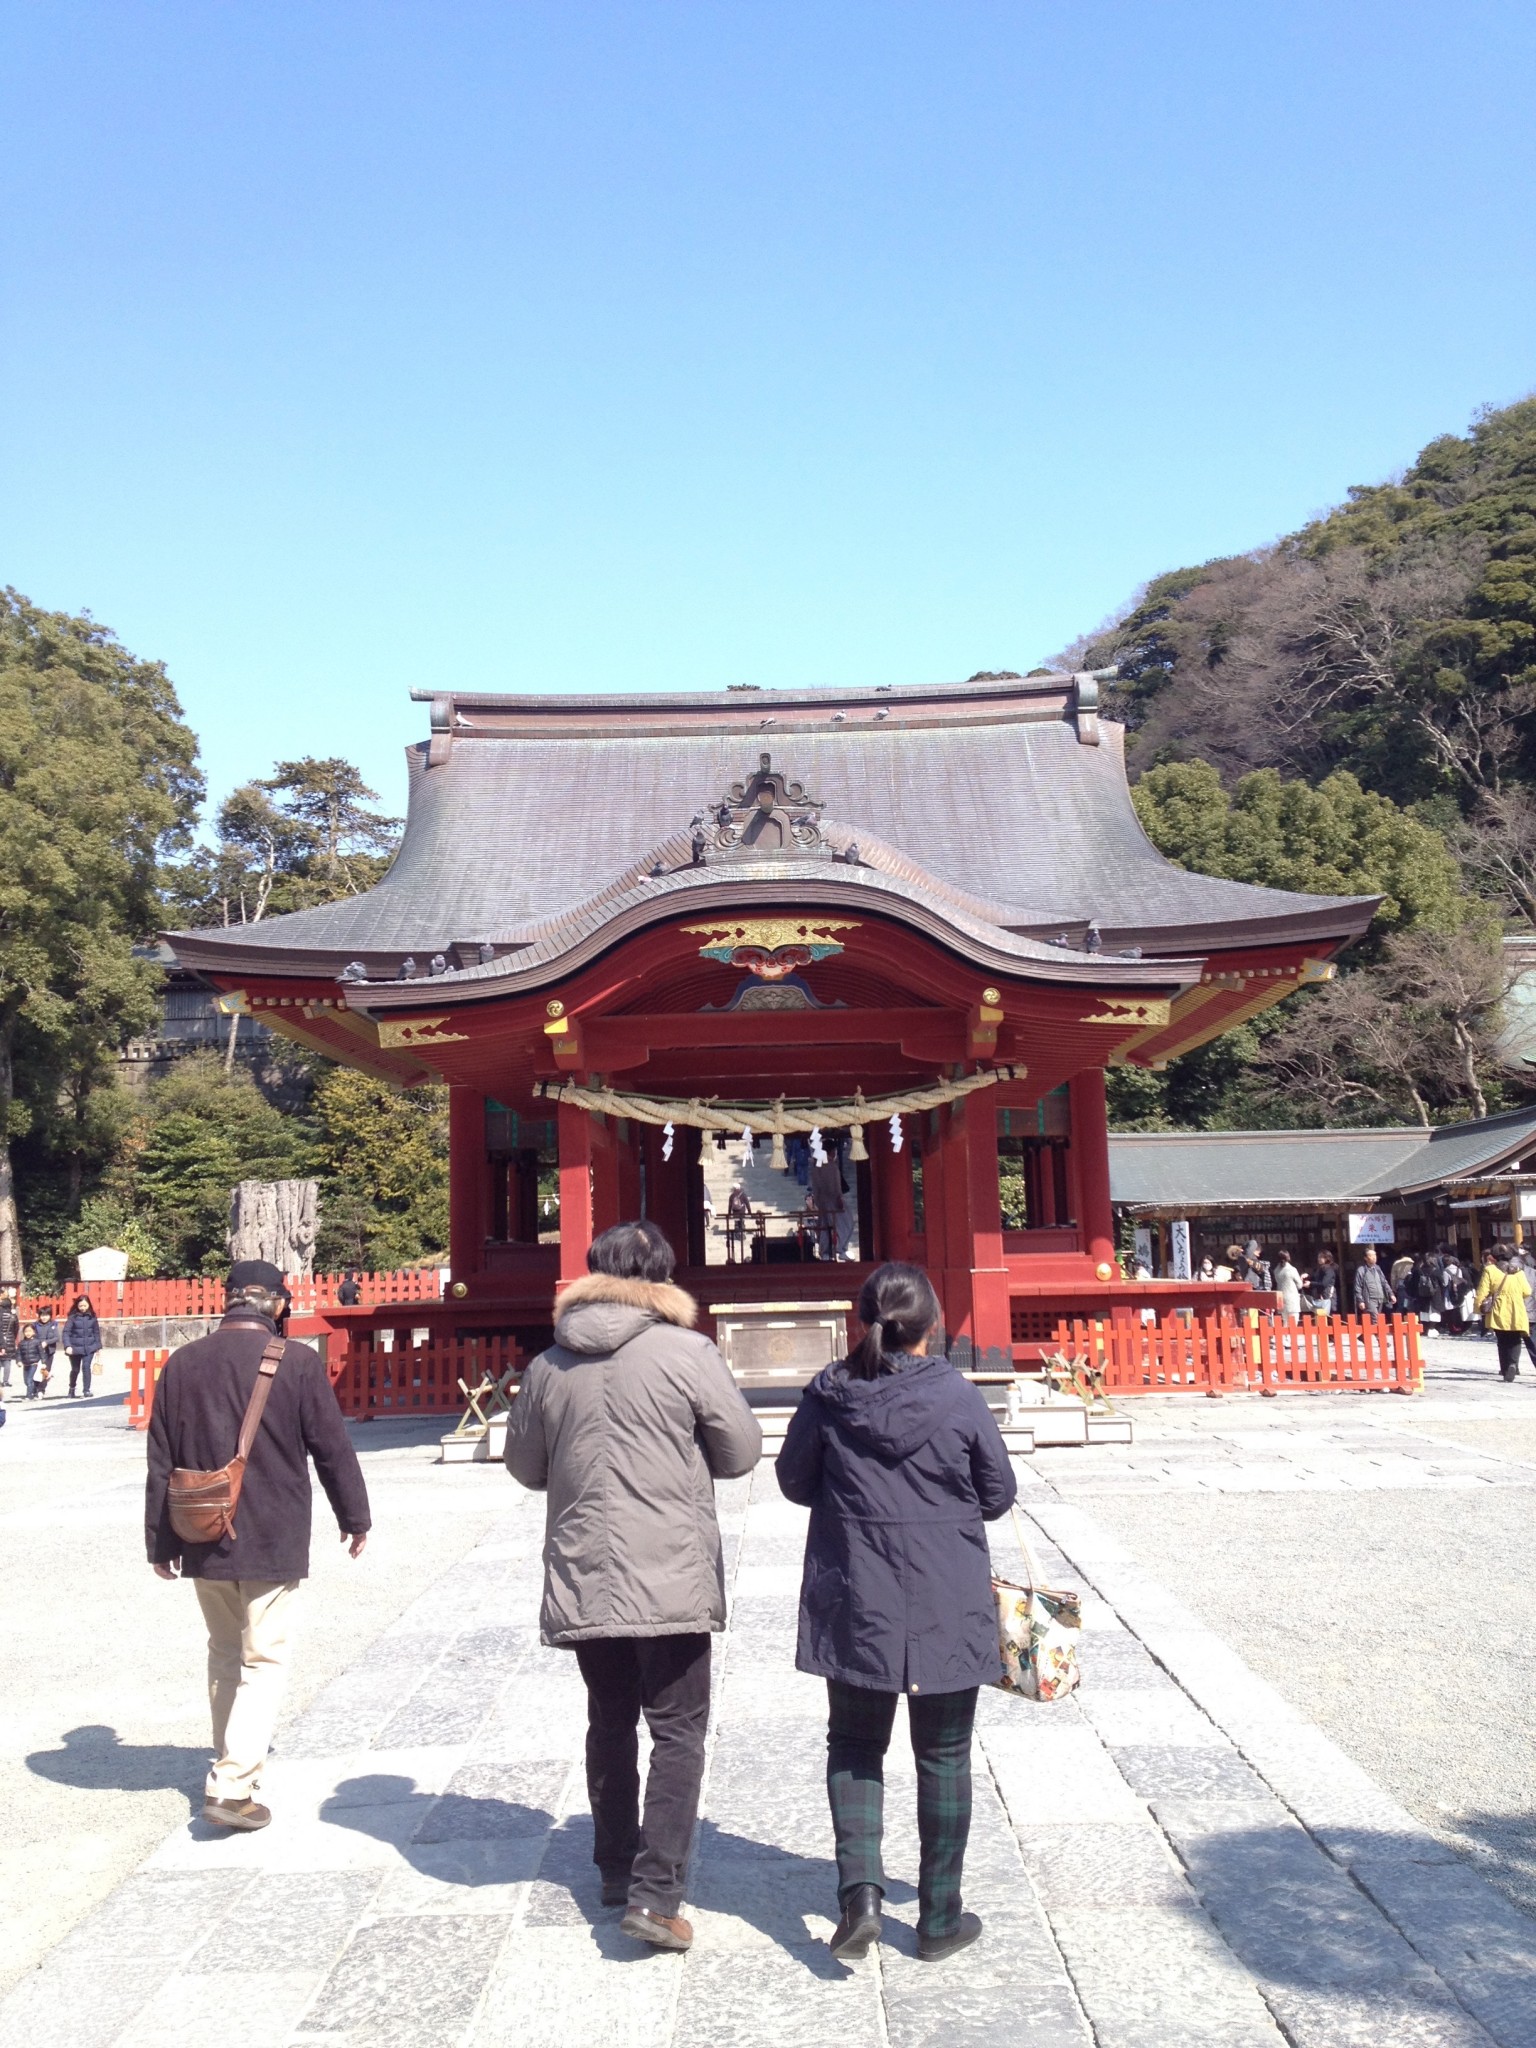 Kamakura’s historic Tsurugaoka Hachimangu shrine complex